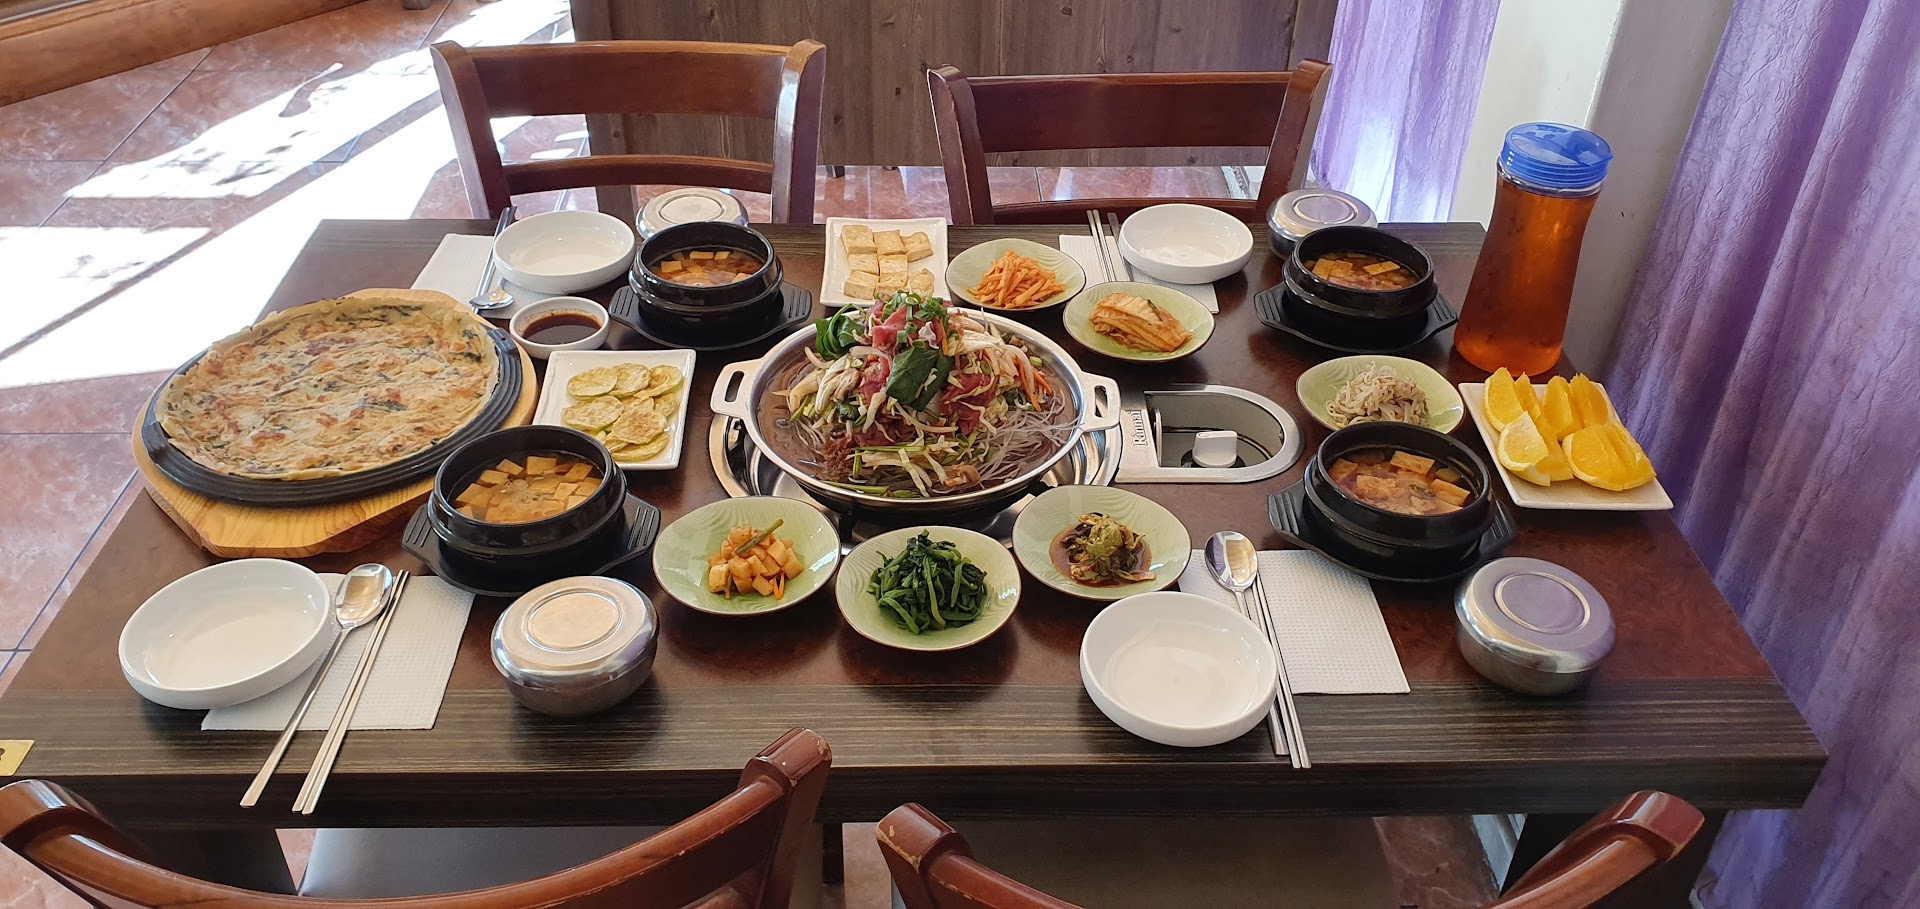 Seoul Garden Korean food